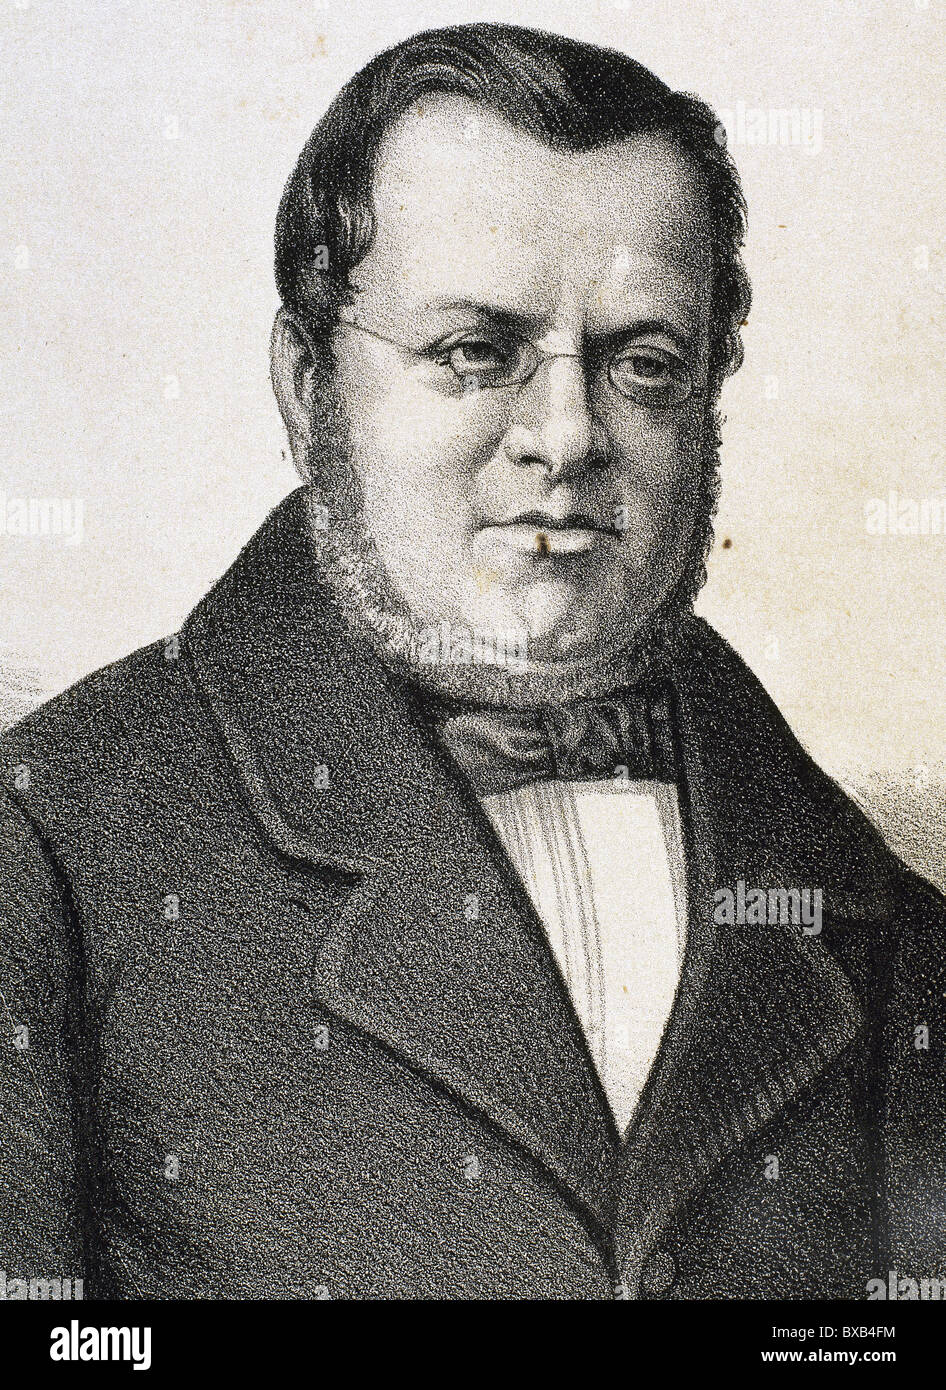 Cavour, Camillo Benso Graf von italienischen Staatsmann (Turin, 1810-1861). Gründer des "Il Risorgimento" (1847). Kupferstich von Rim. Stockfoto